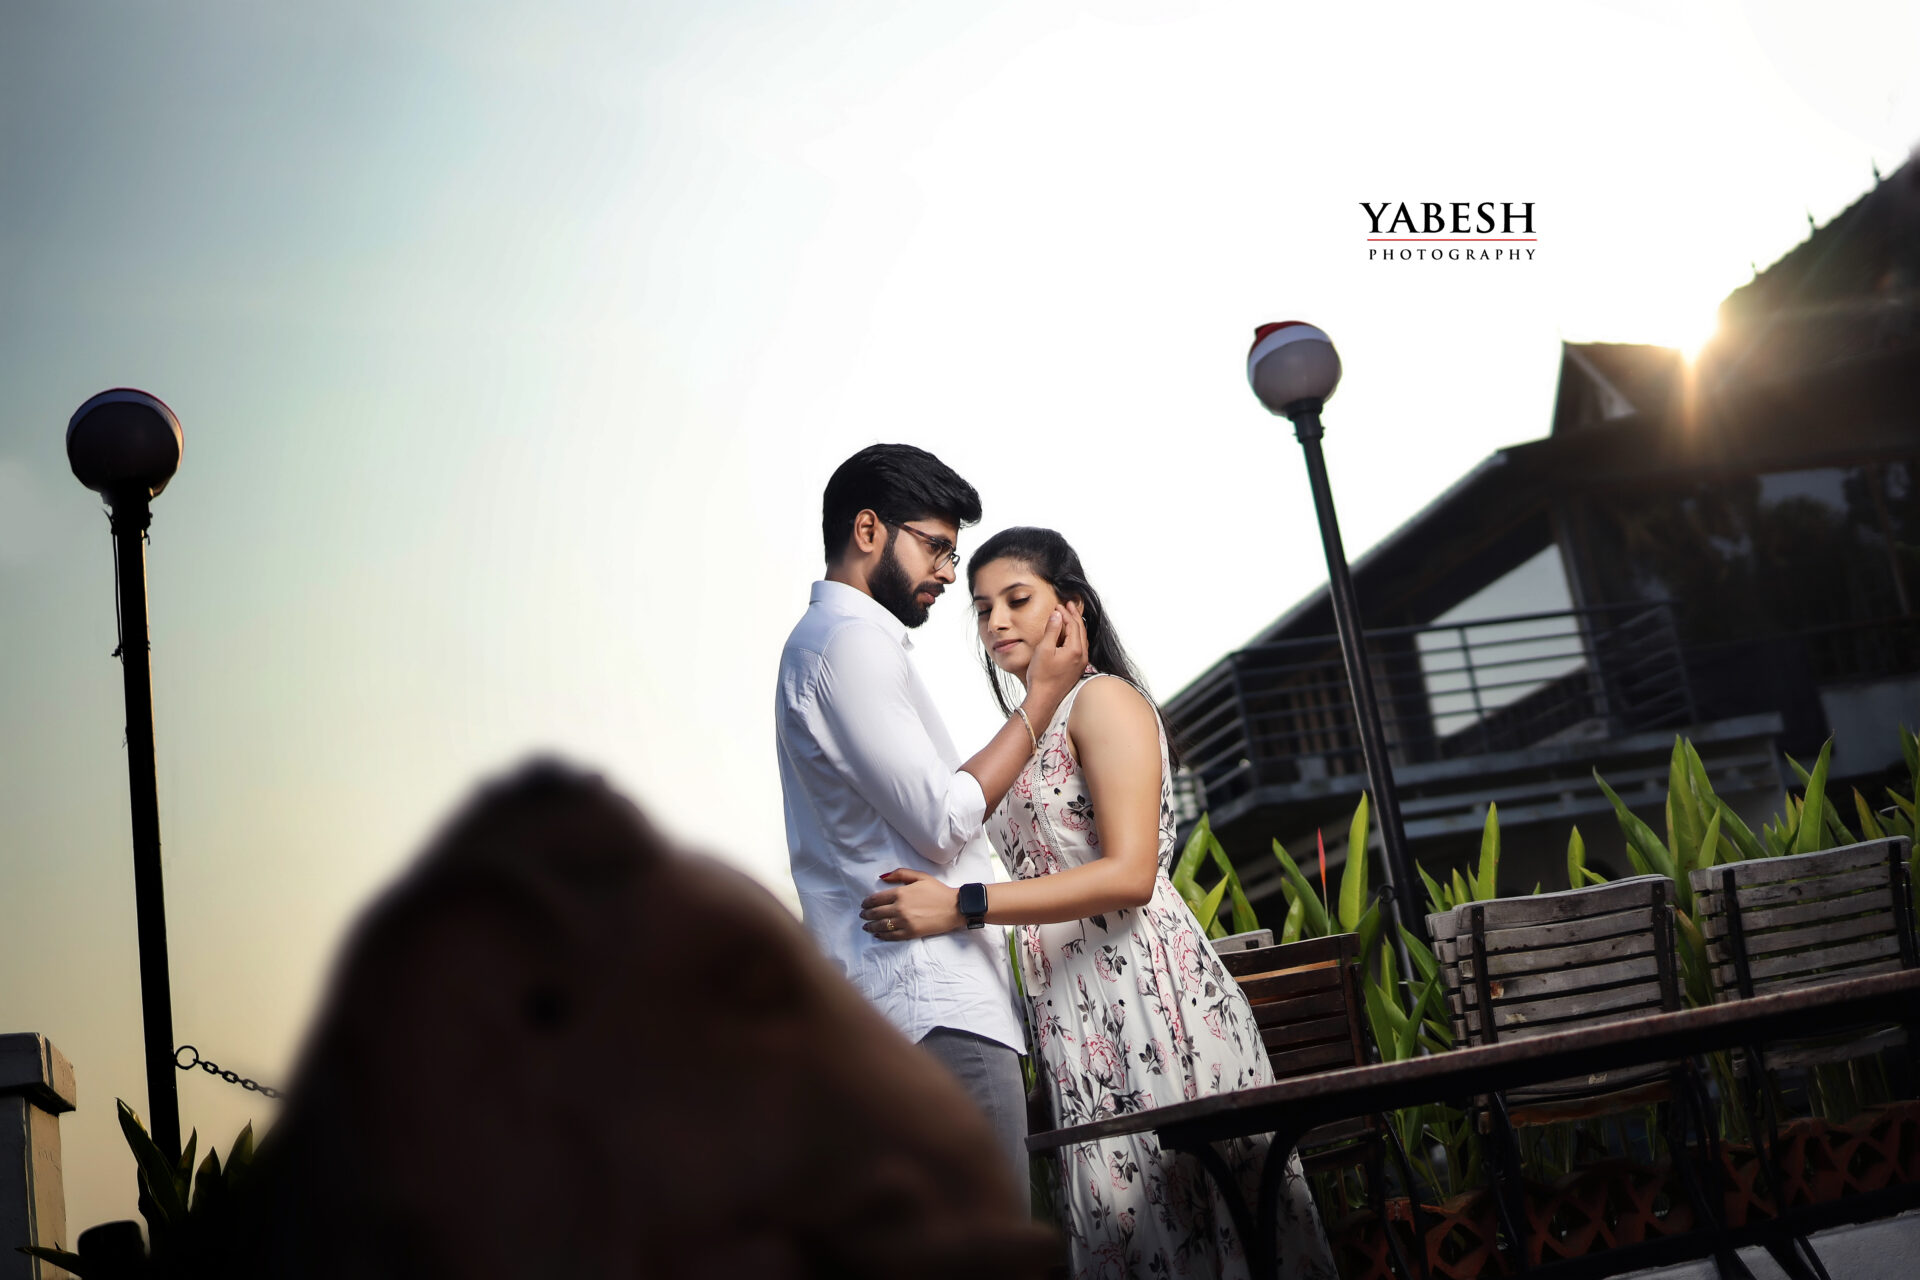 Yabesh Photography: Nitya & Kowsalya's Post-Wedding Photo Shoot